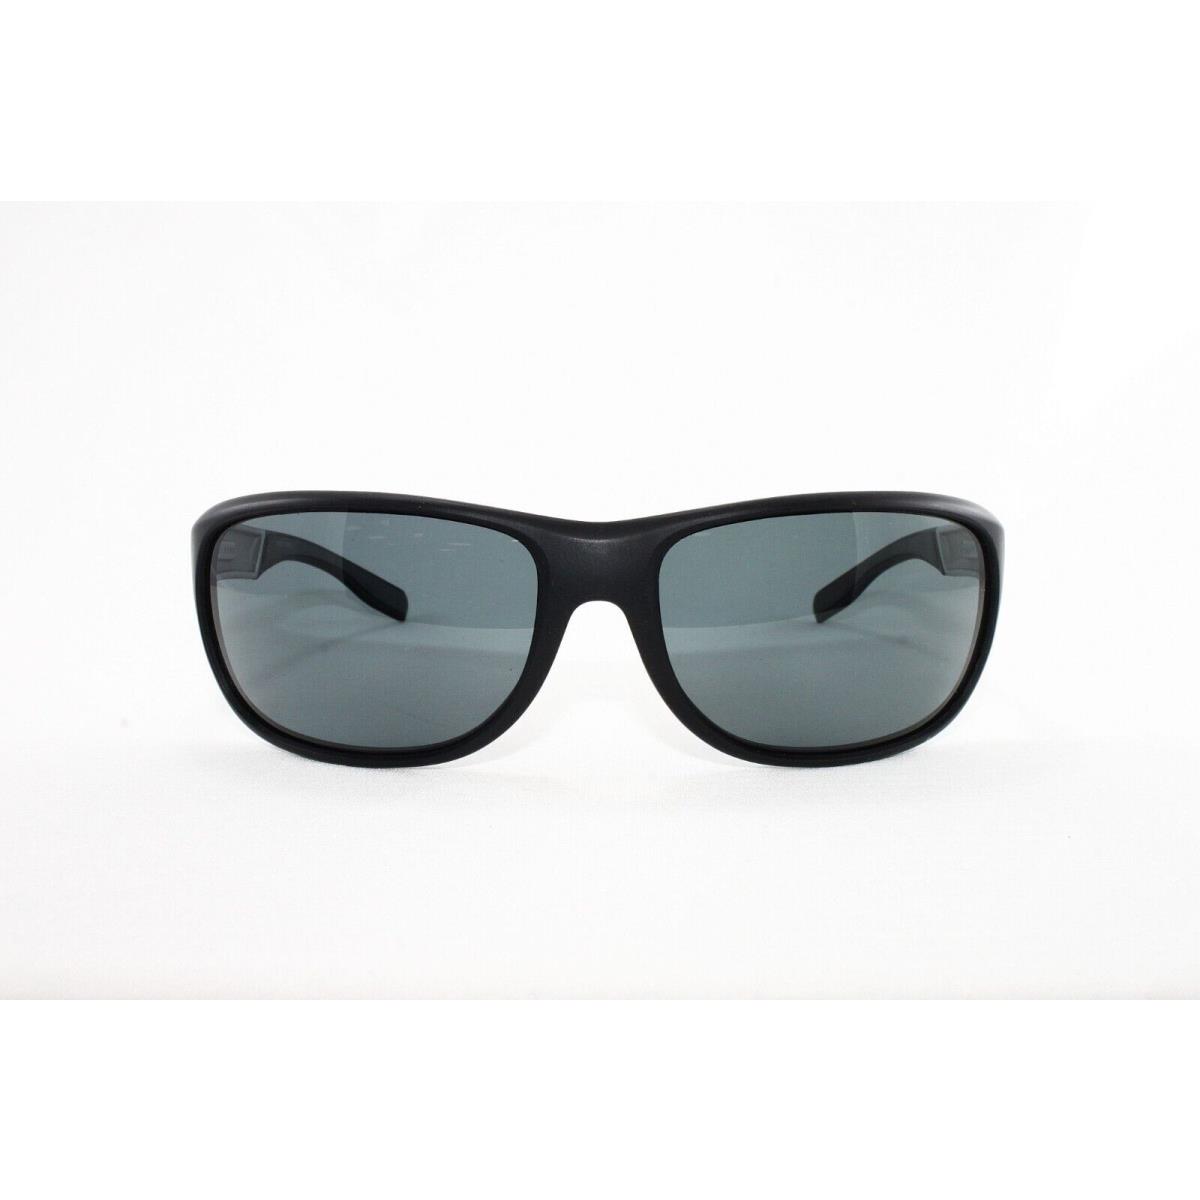 Hugo Boss sunglasses  - Black Frame, Gray Lens